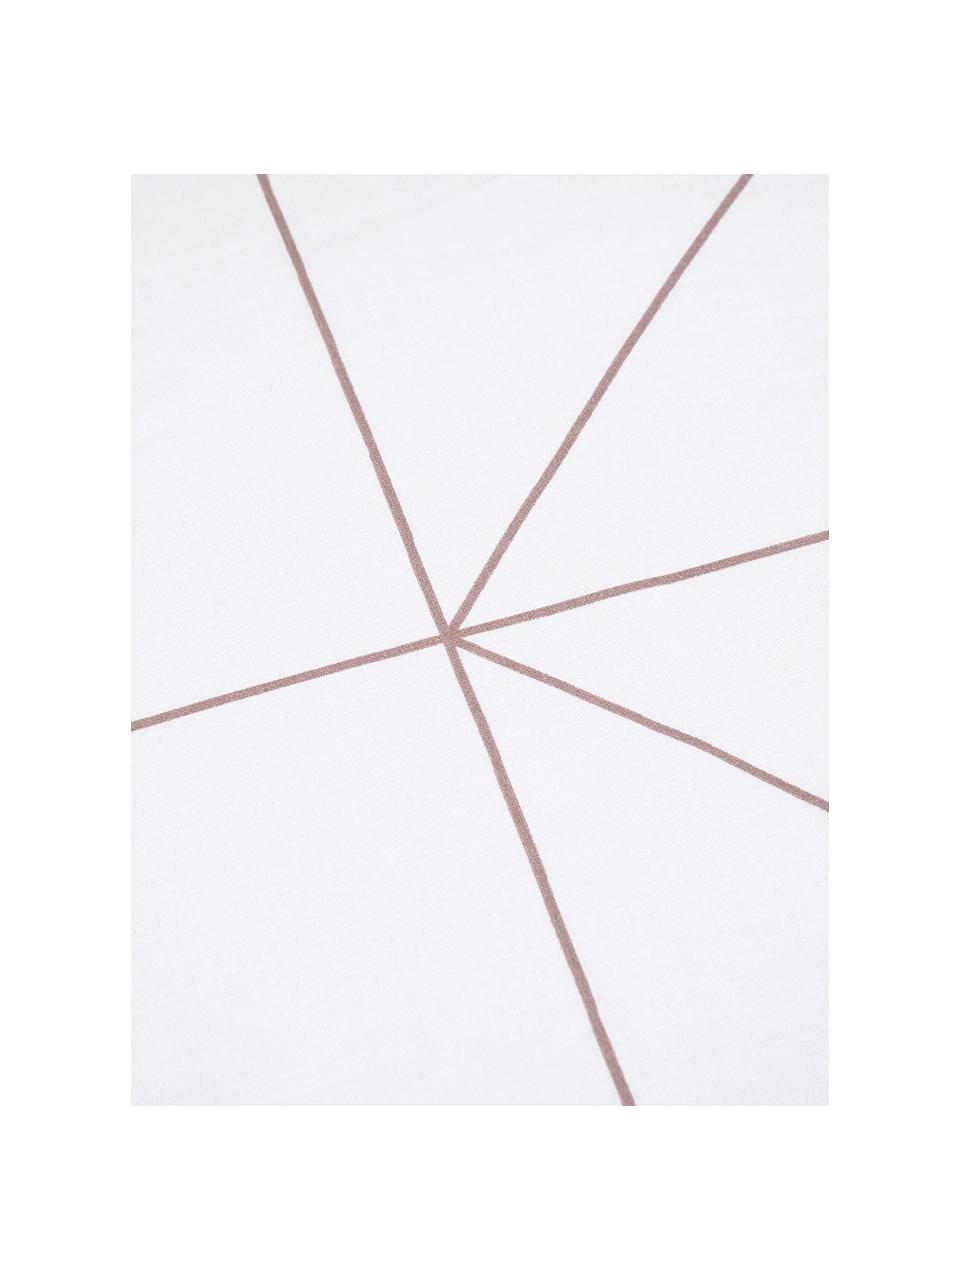 Taie d'oreiller 50x70 réversible en coton renforcé Marla, 2 pièces, Mauve, blanc, 50 x 70 cm